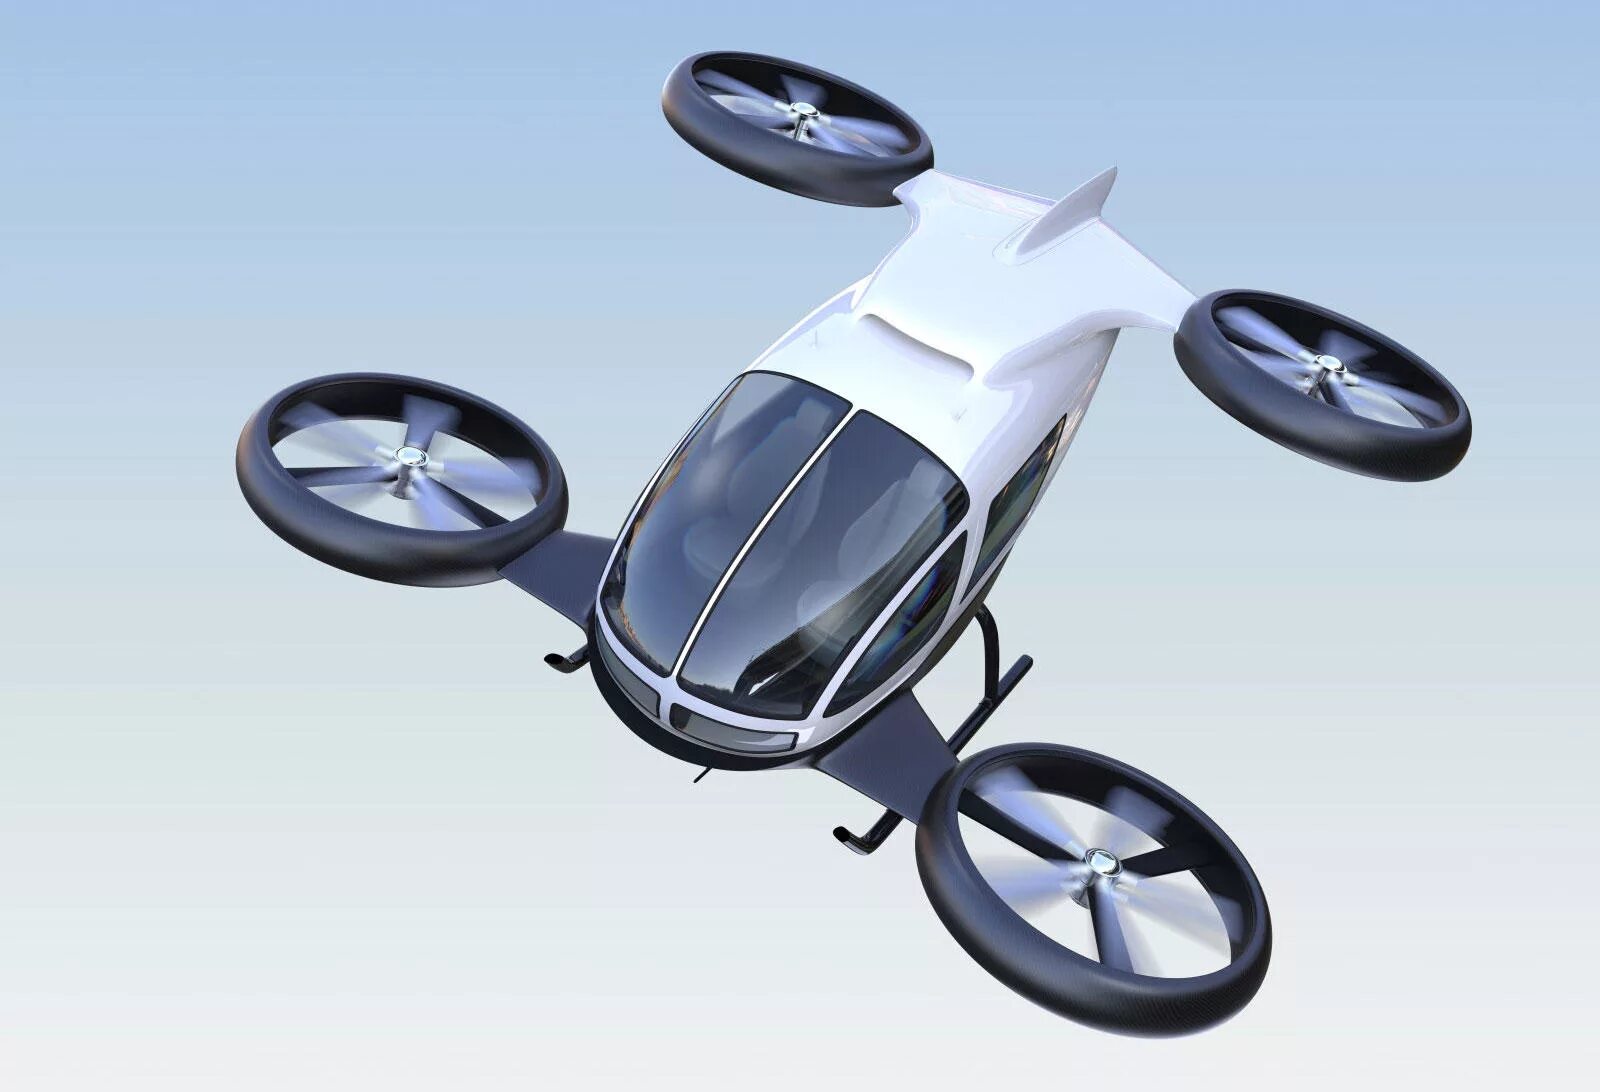 Летающая машина. Летающие колеса. Летающие аппараты будущего. Транспорт будущего. Модели летательных аппаратов